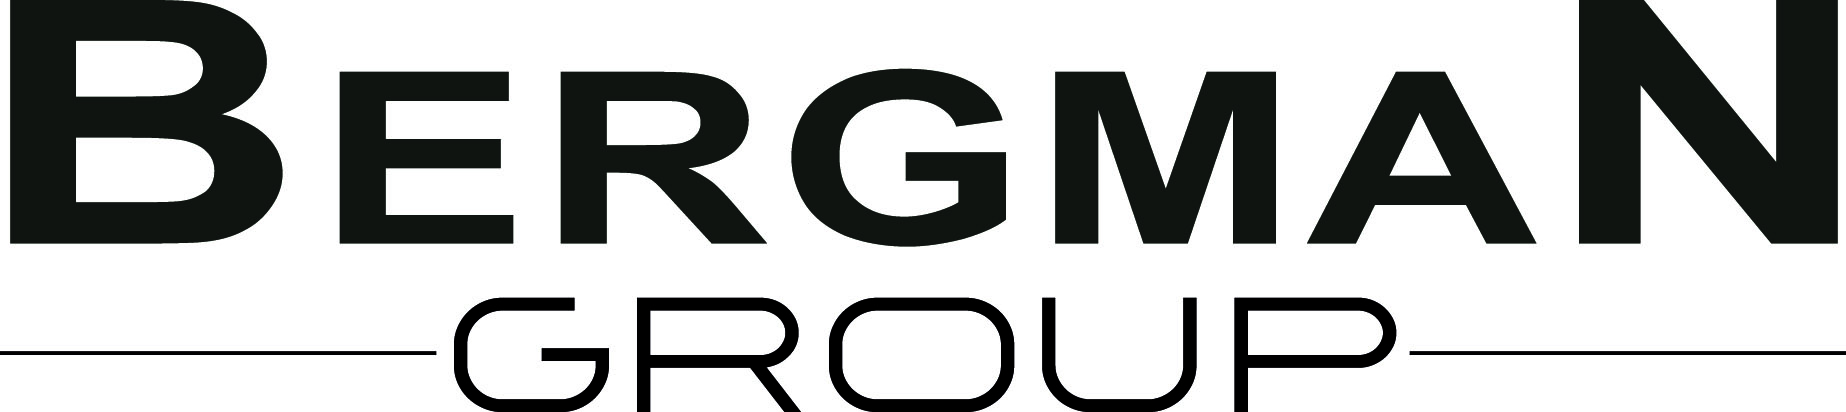 Bergman group logo